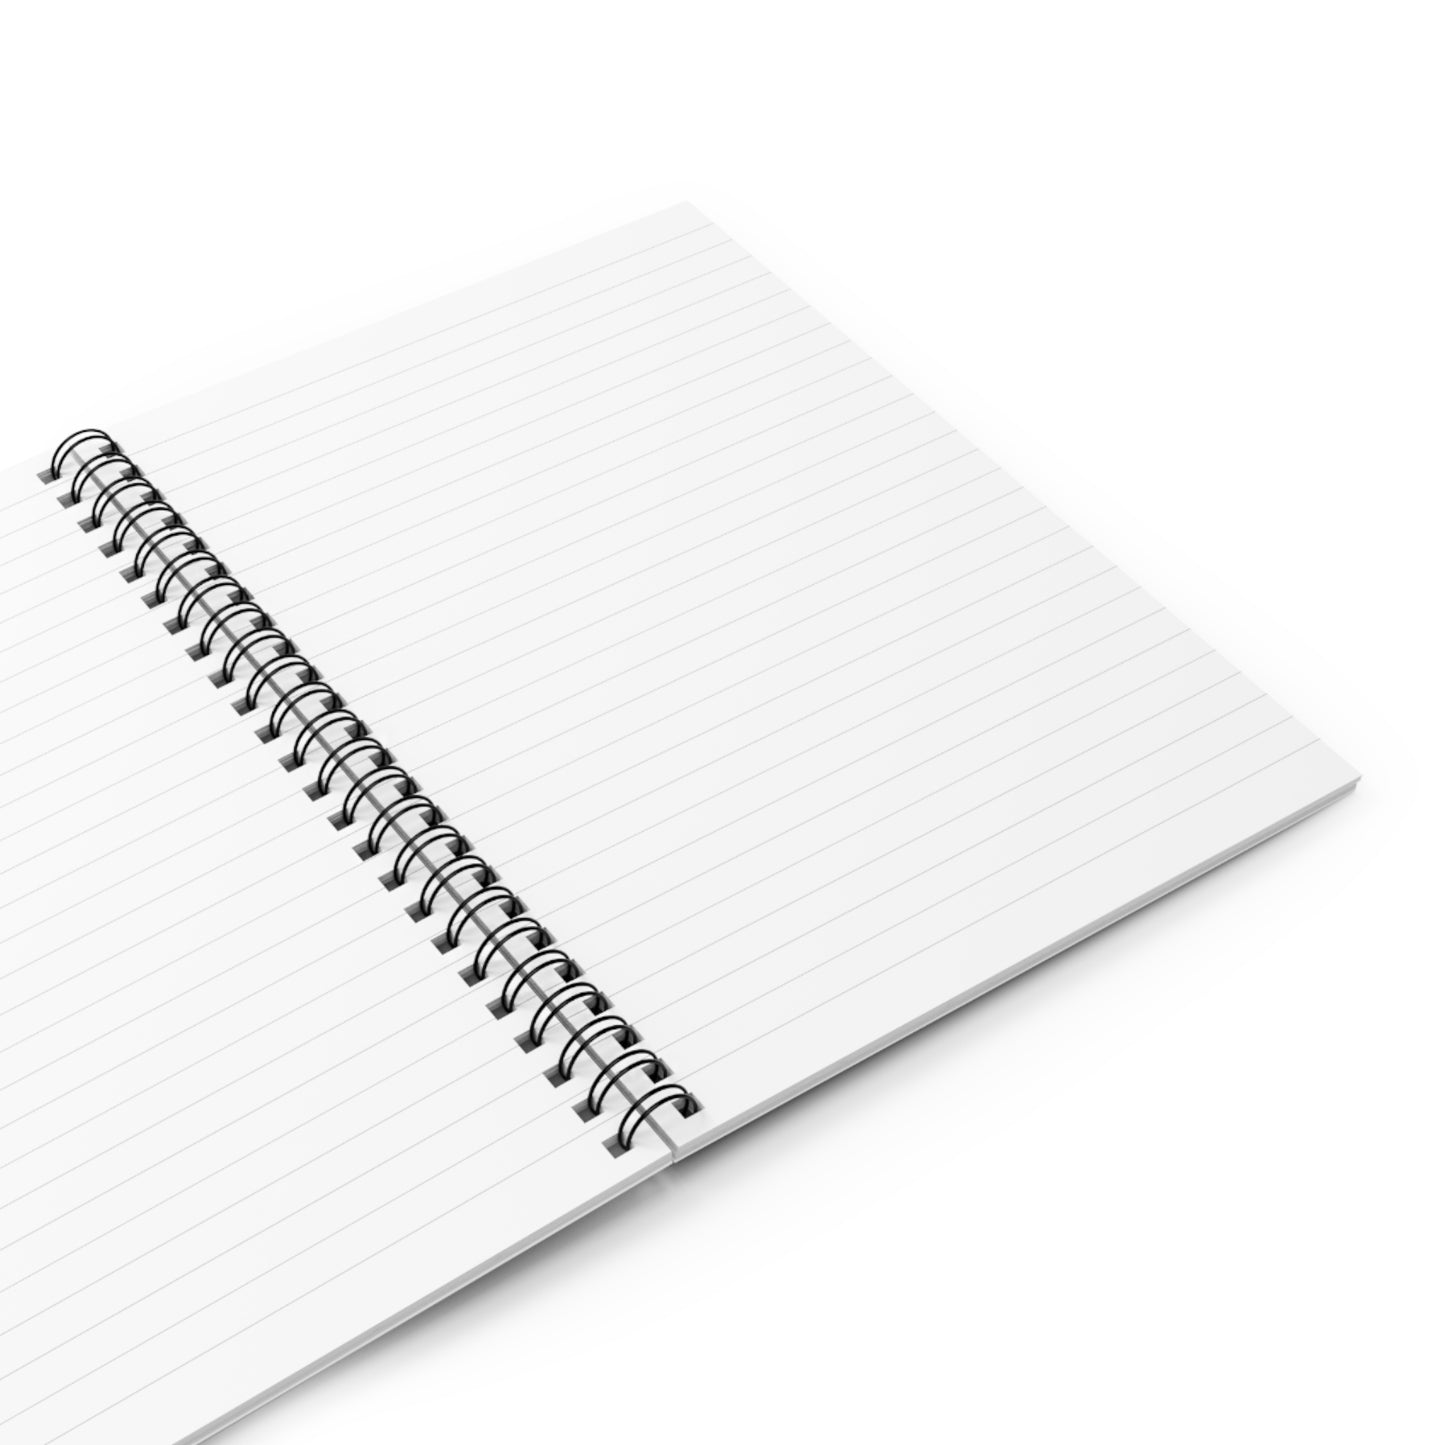 Ida Coco Zen -  Journal Notebook